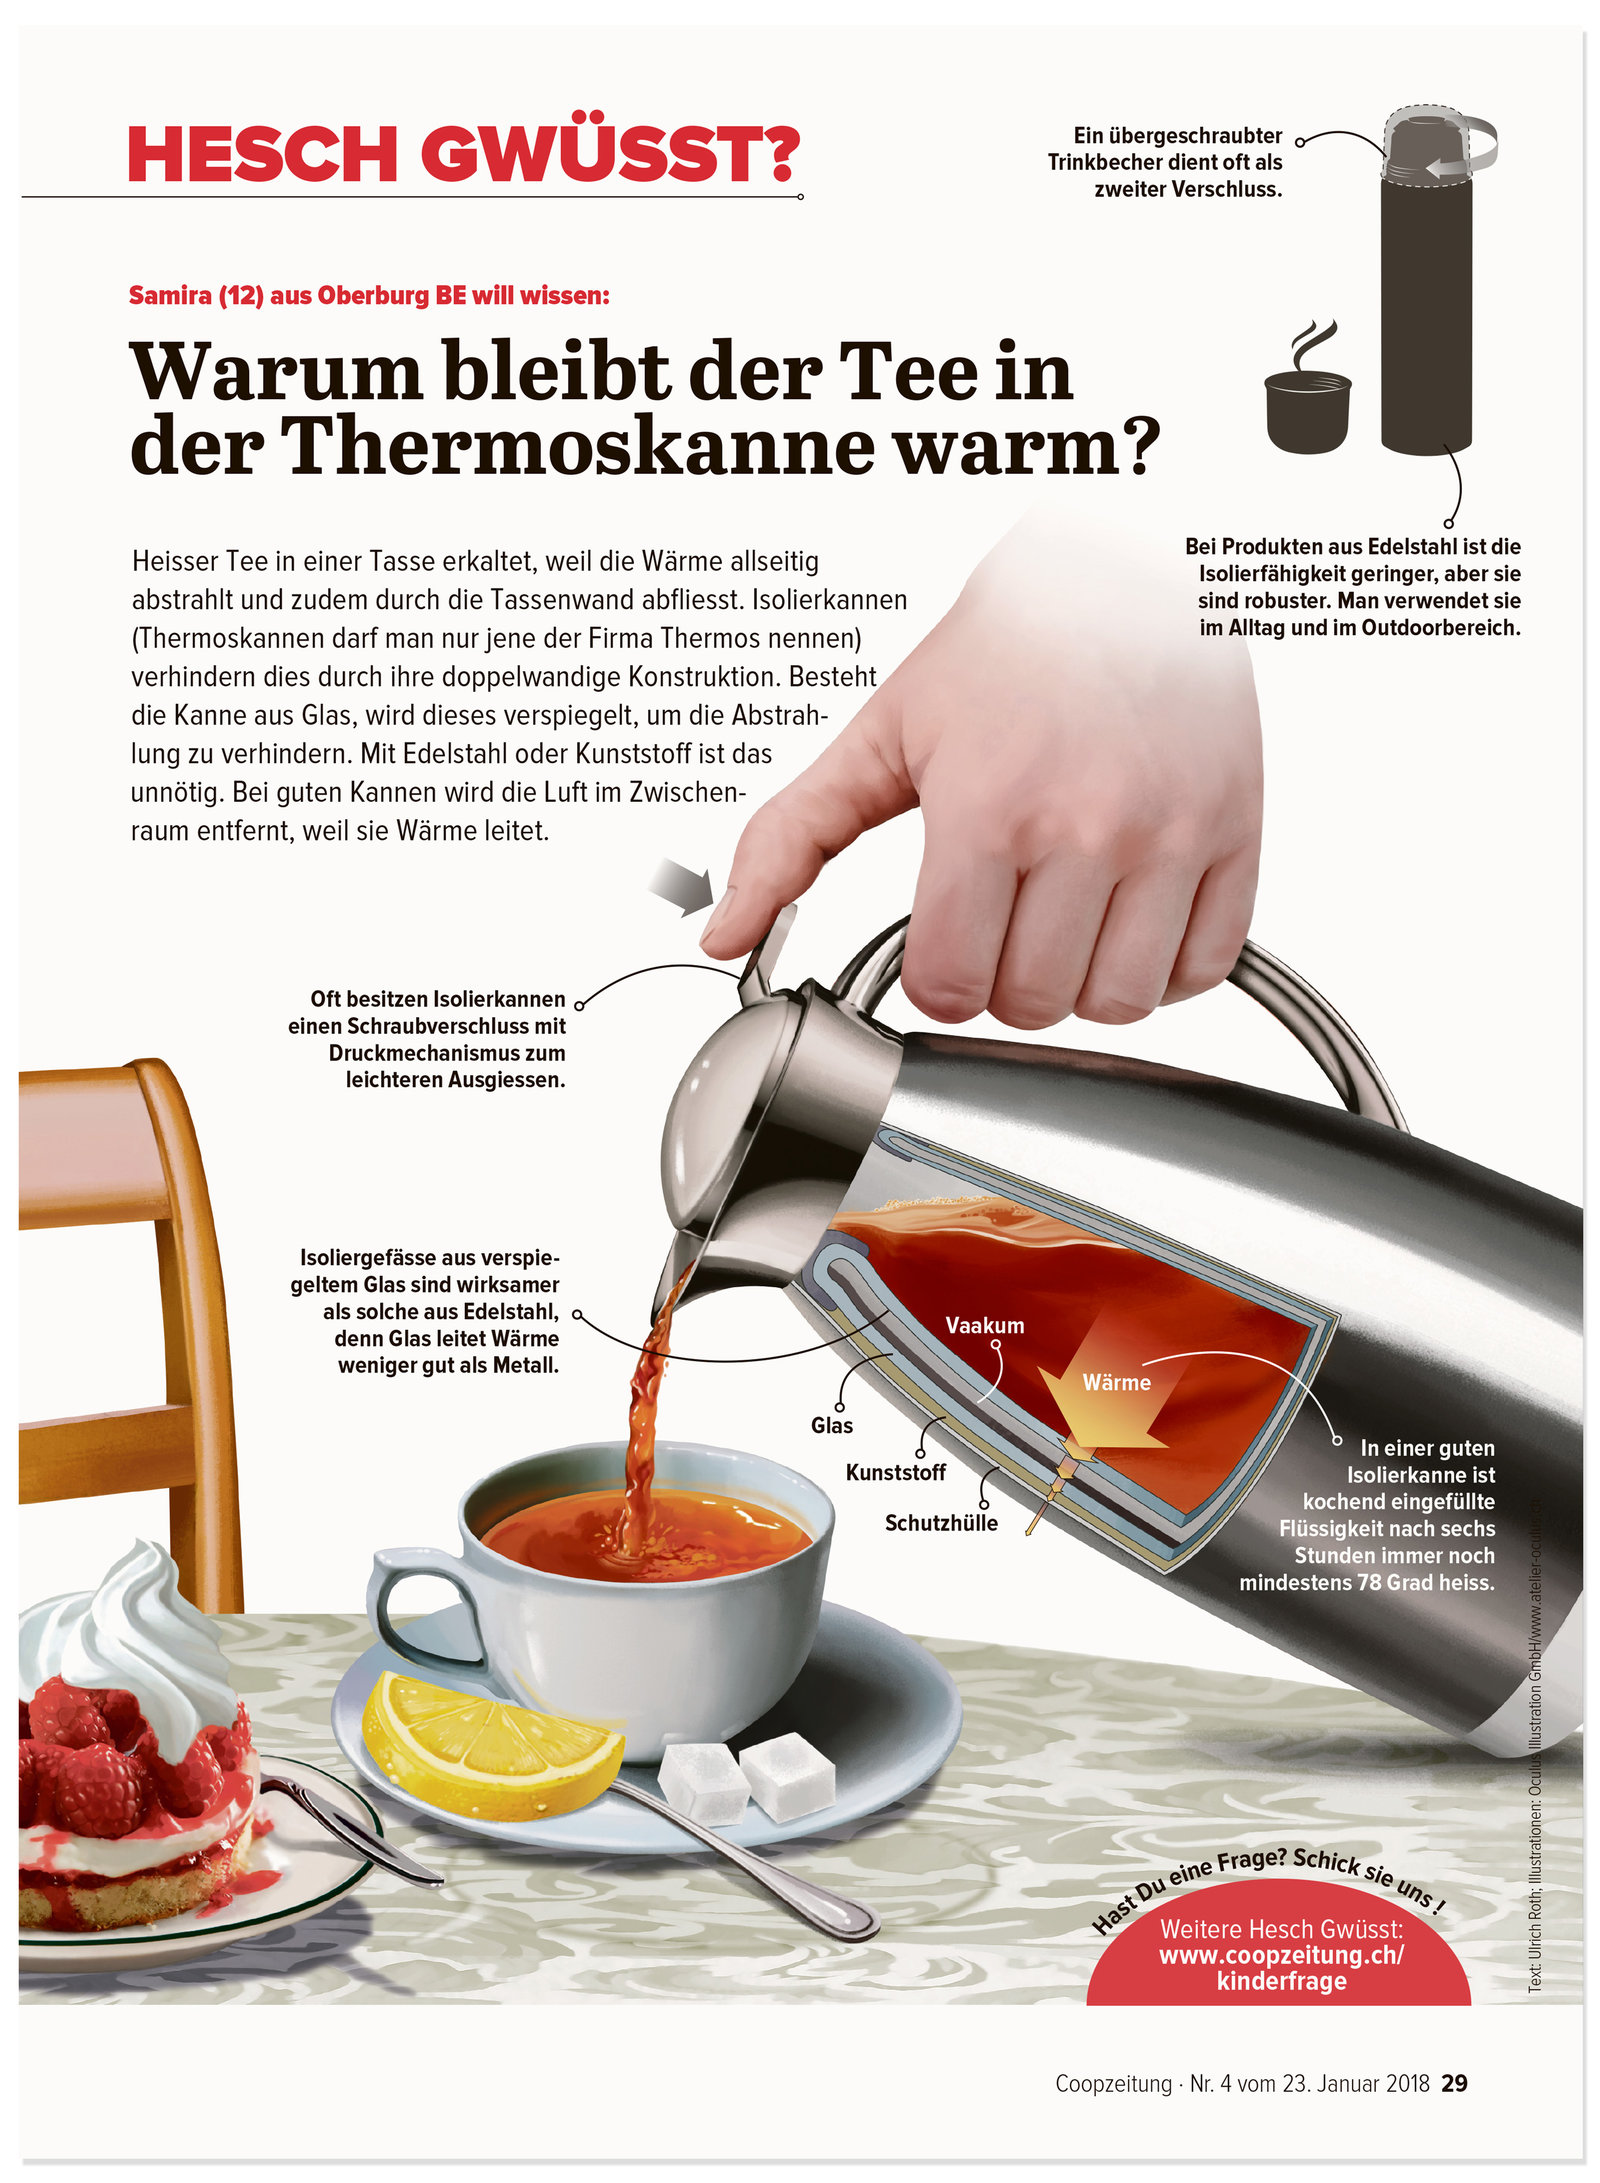 oculus-illustration-coopzeitung-hesch-gwuesst-thermoskanne